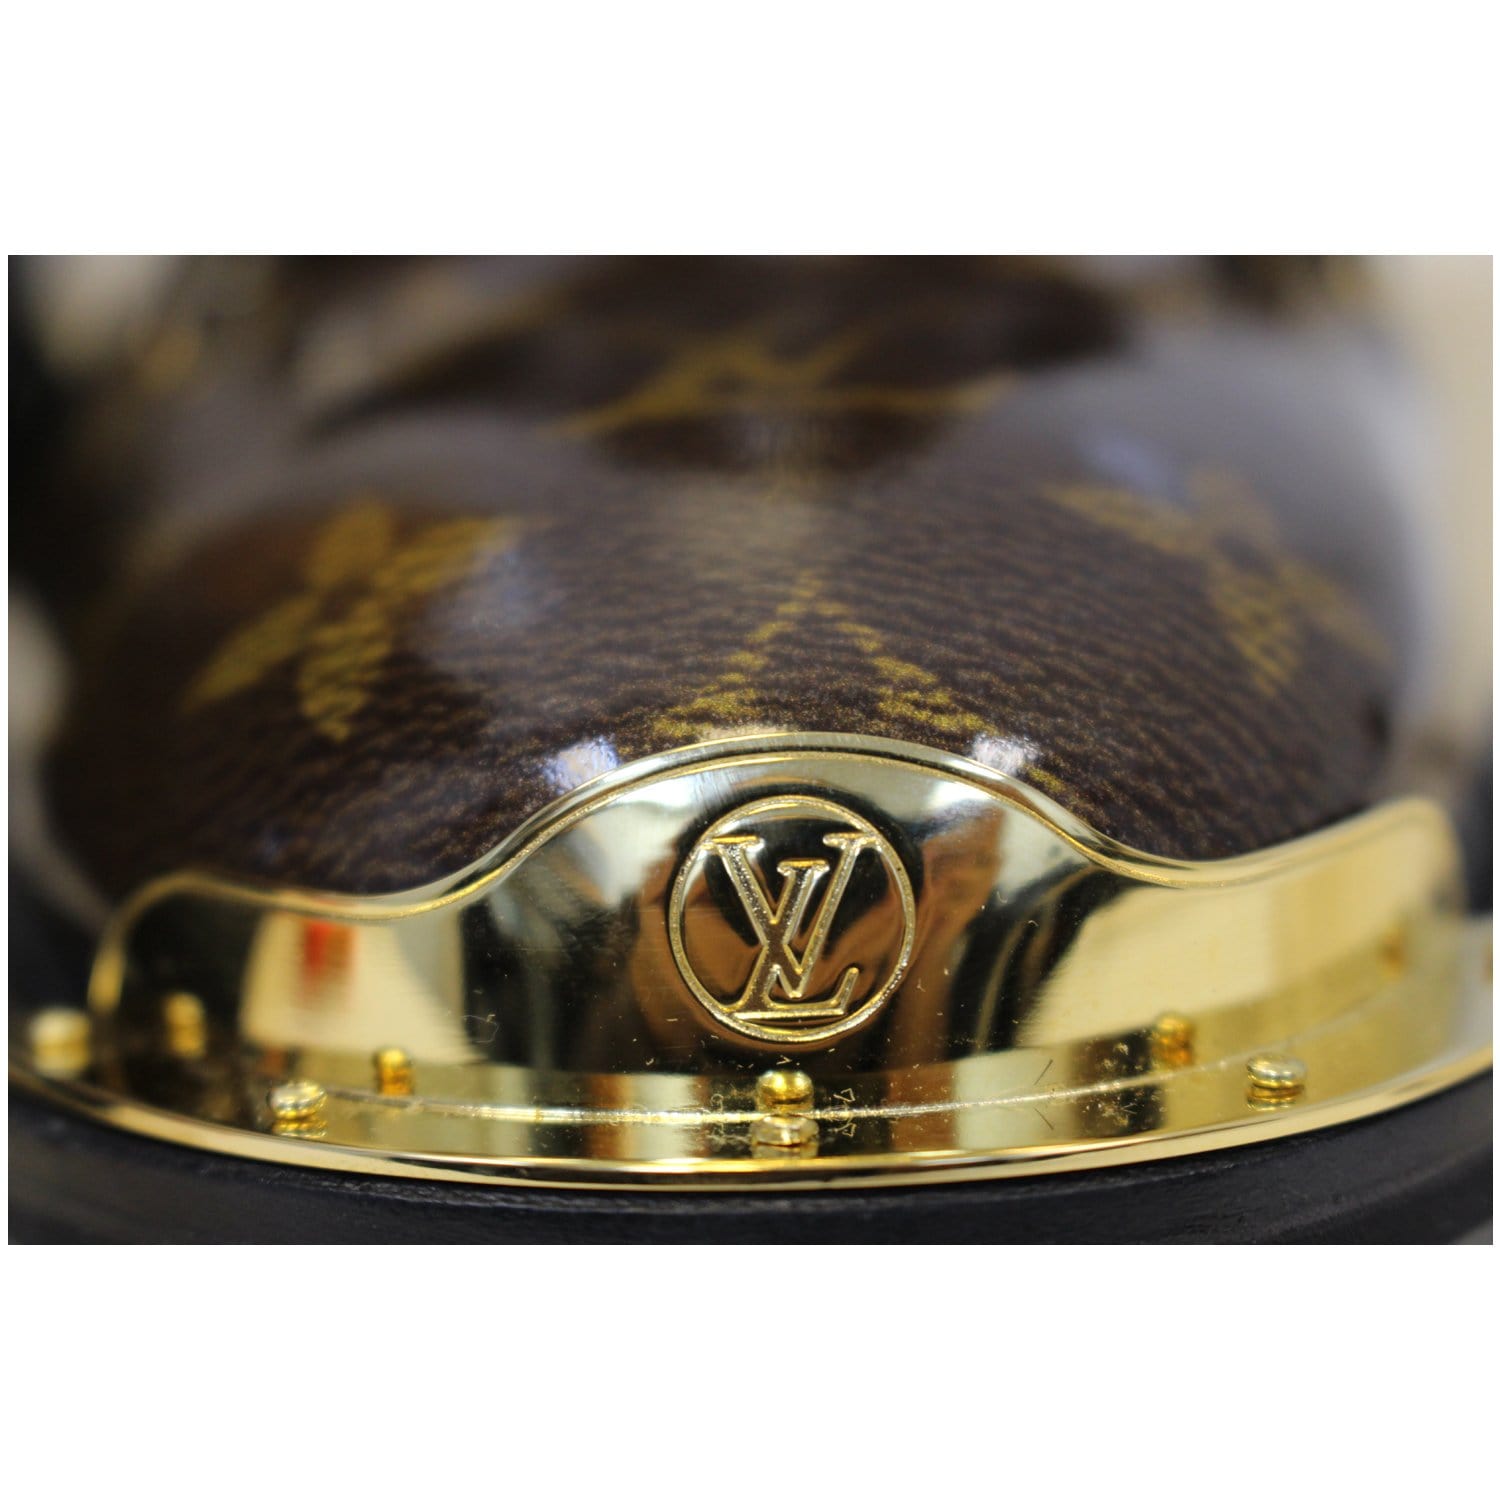 Louis Vuitton Obercampf ankle LV monogram boots 8.5 LV 9.5 US 42.5 EUR  BM0179 *